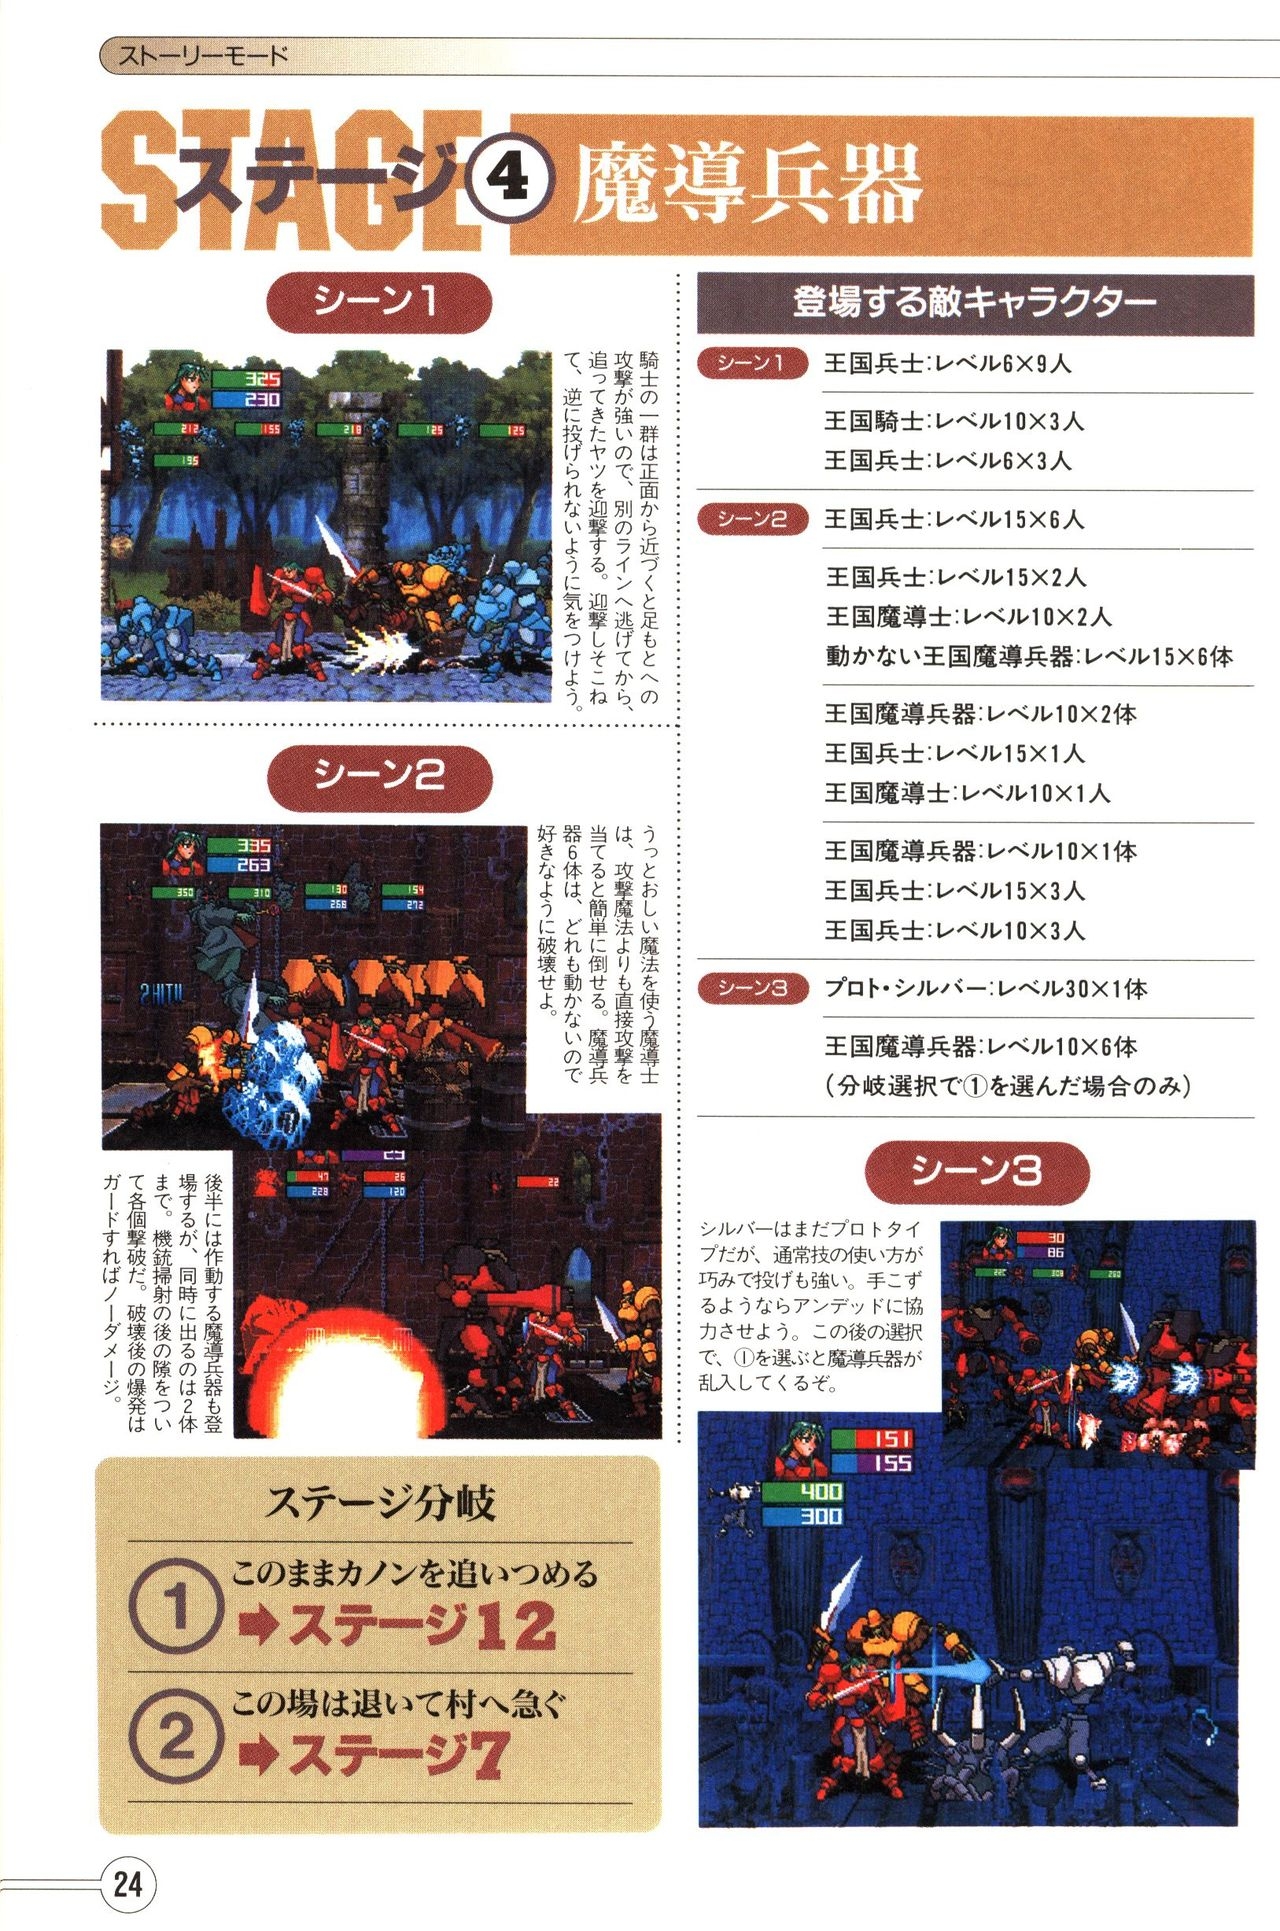 Guardian Heroes Perfect Guide (Sega Saturn magazine books) 26